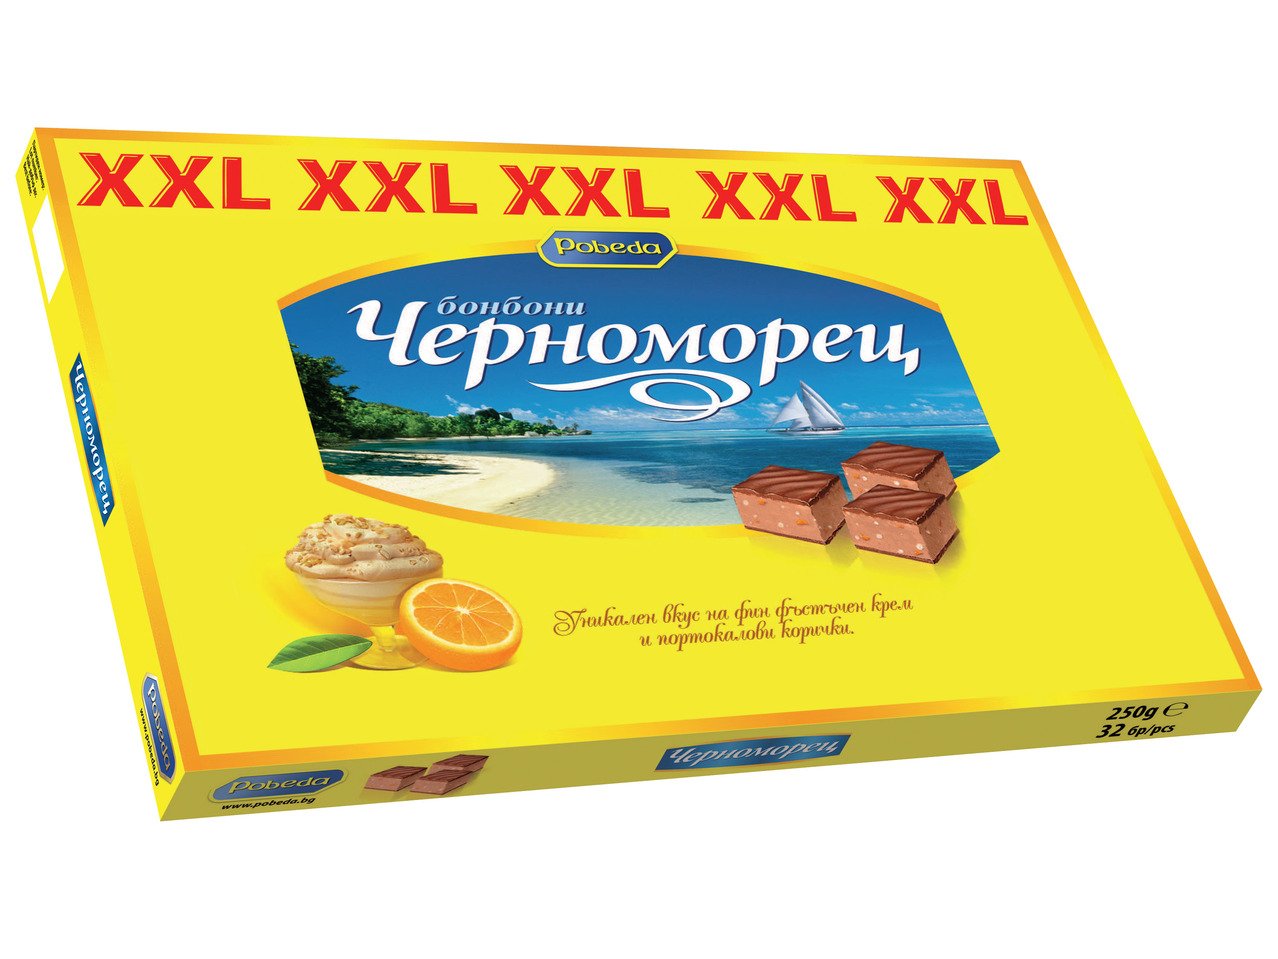 Черноморец Бонбони XXL